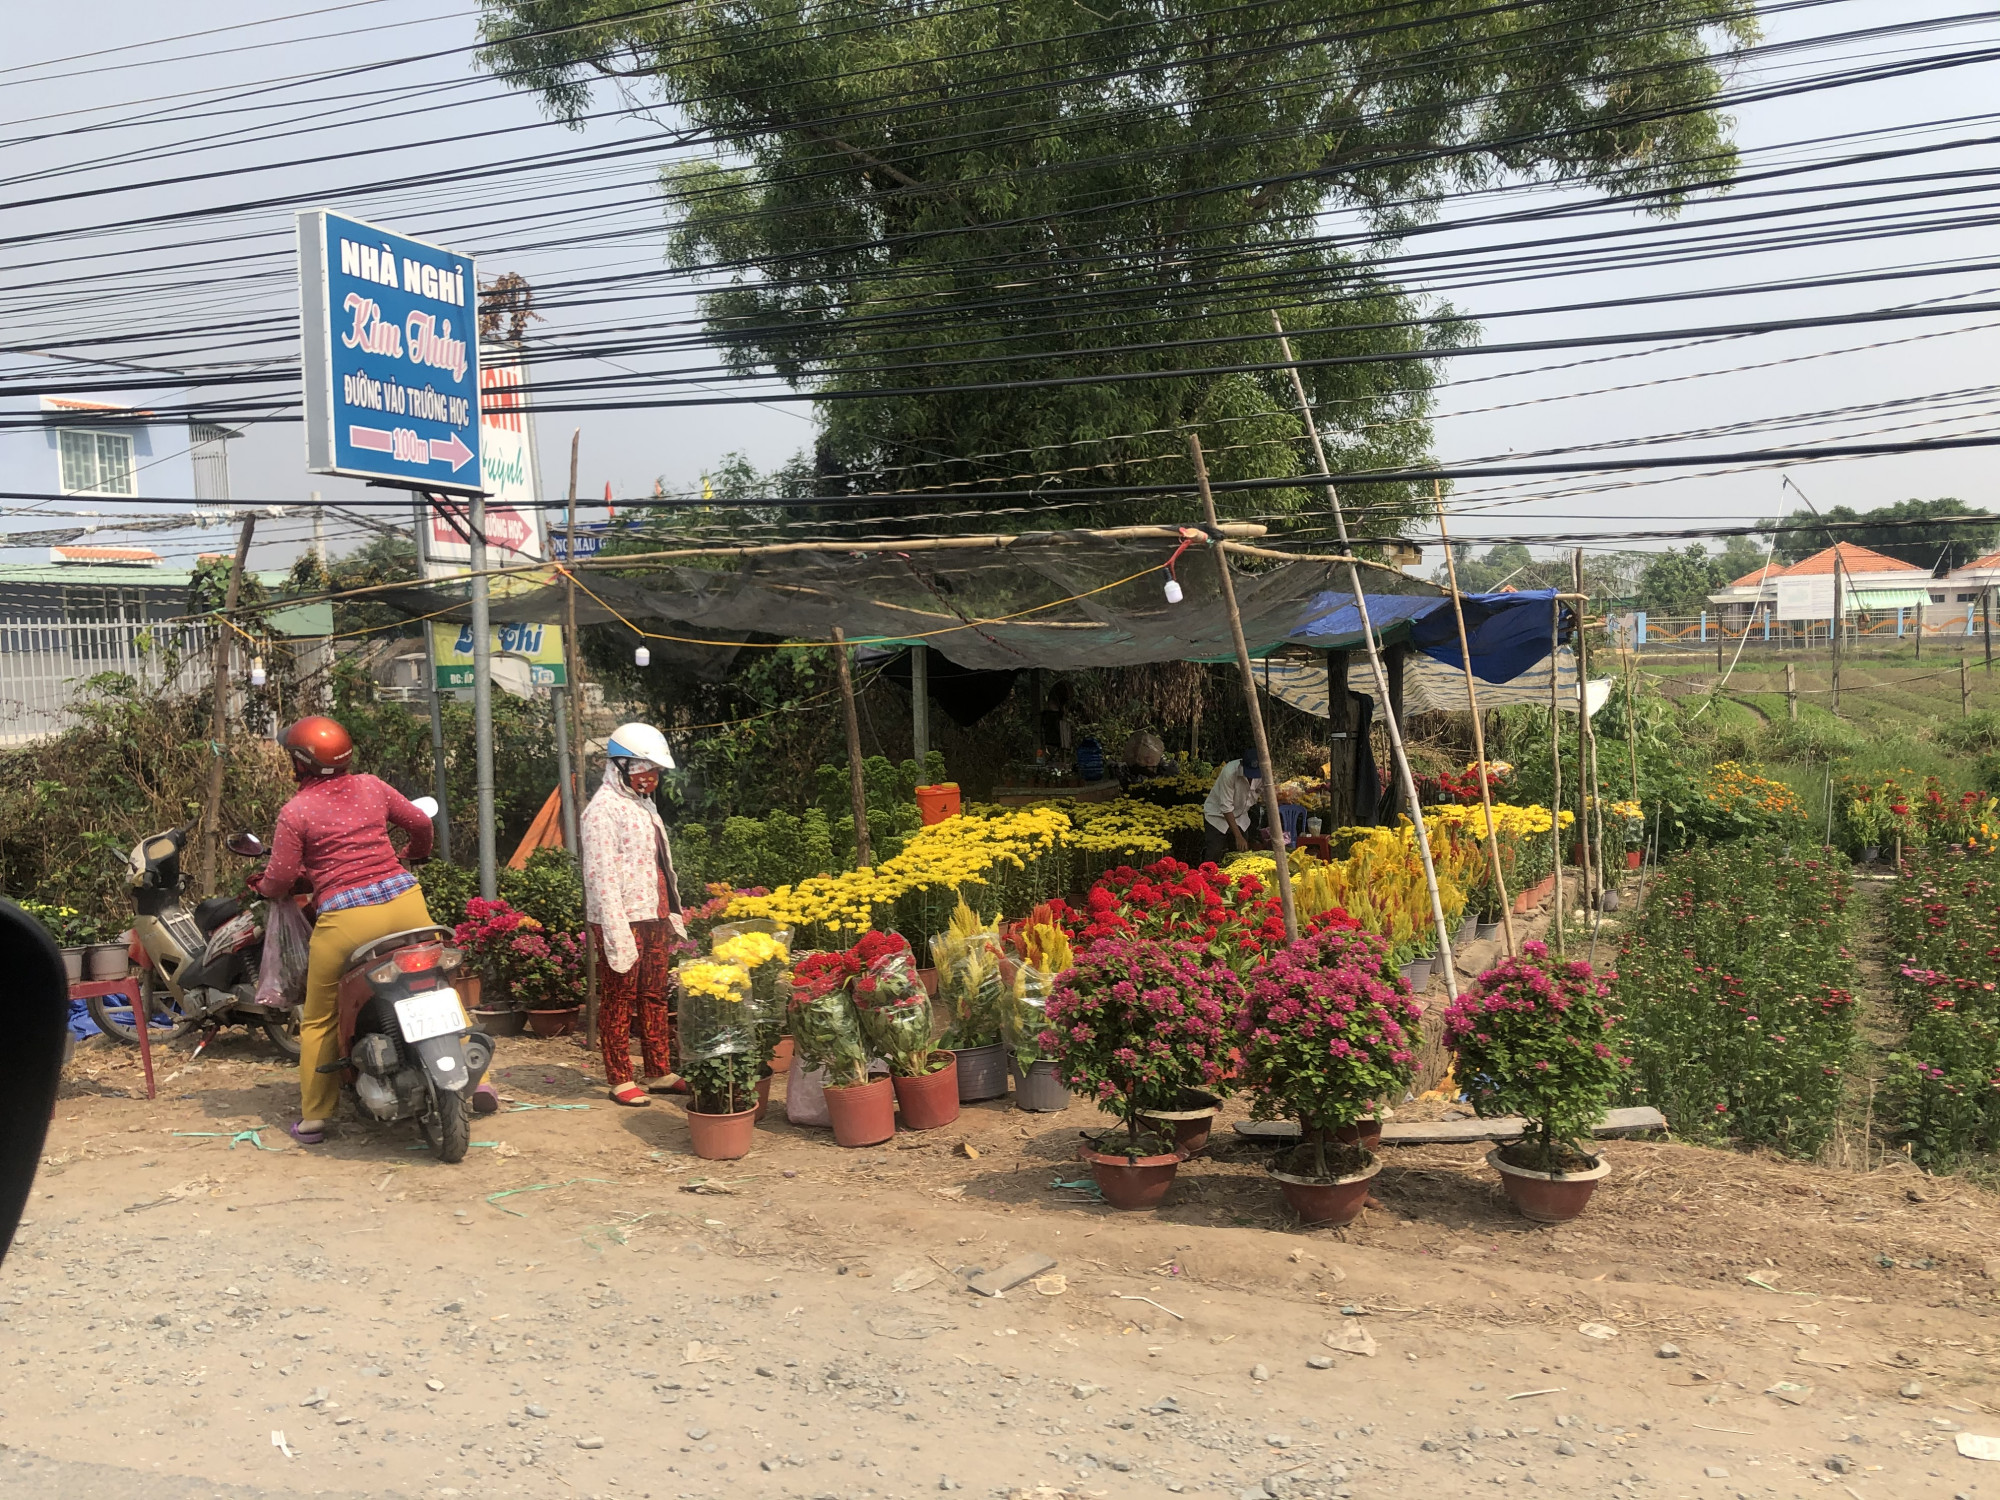 Hoa bày bán dọc đường từ huyện Cần Đước lên tận chợ Bình Chánh, thậm chí nhiều gia đình siêng năng chở hoa lên tận đường Nguyễn Văn Linh để bán cho được giá hơn. Ảnh: Thanh Huyền.